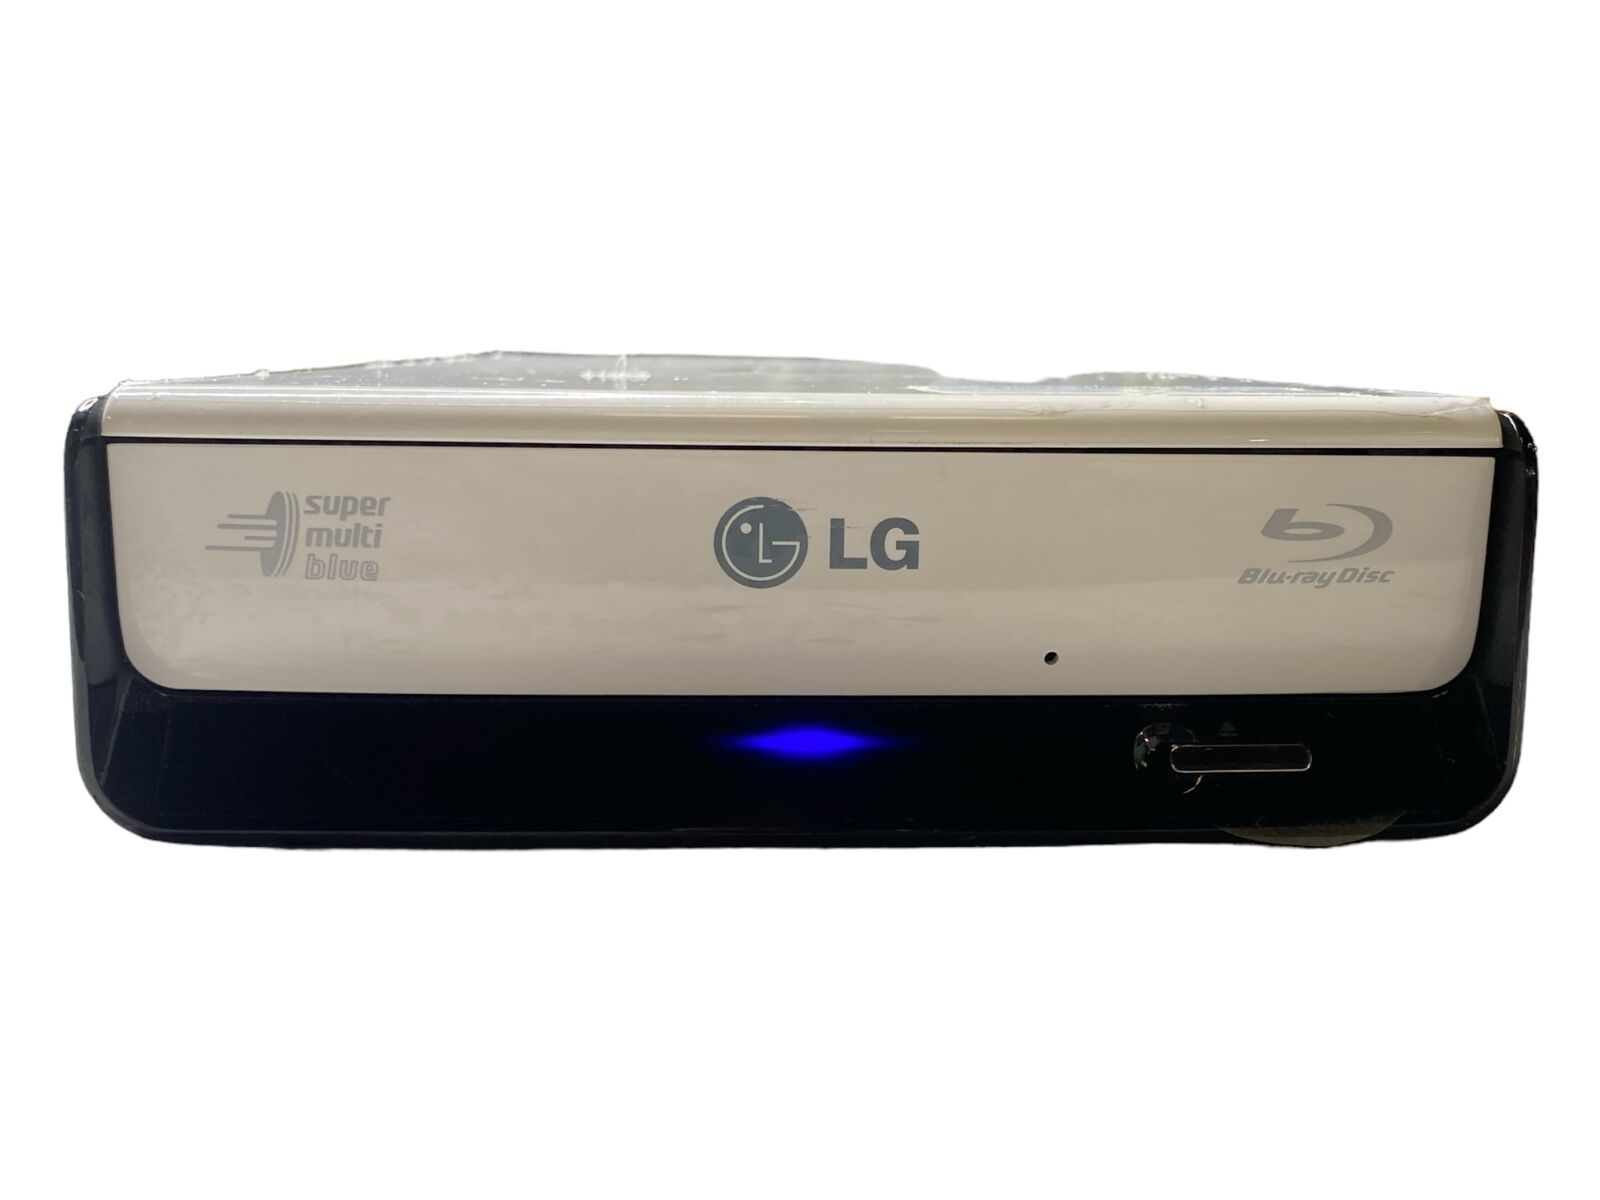 LG Super Multi Blu-ray Disc Rewriter Model BE08LU11